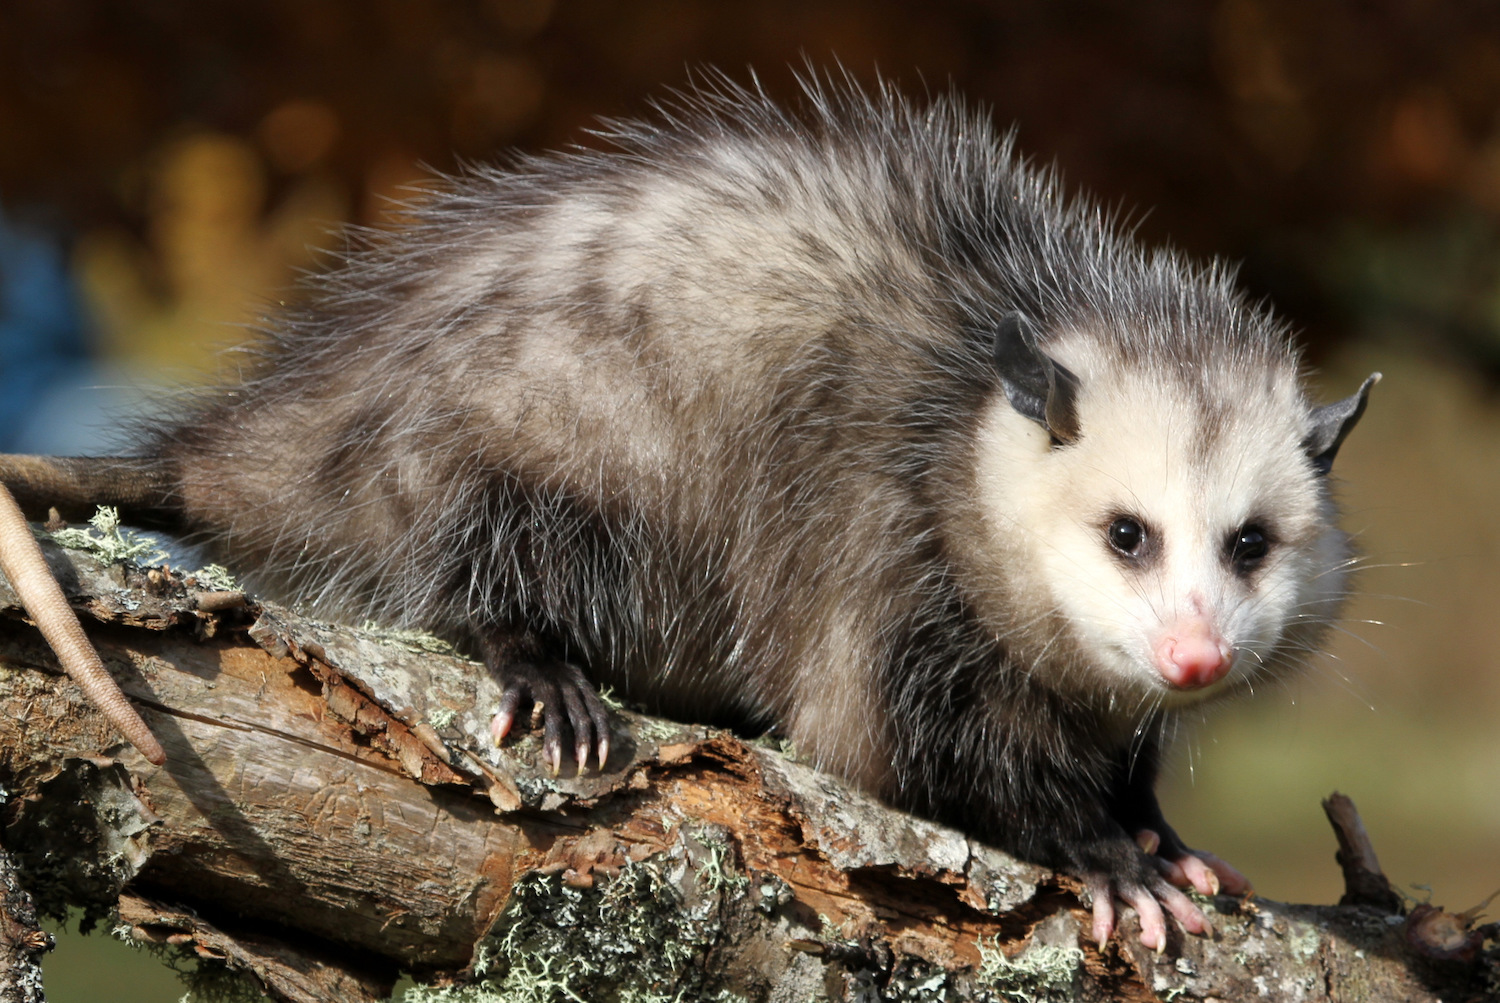 An opossum on a log.